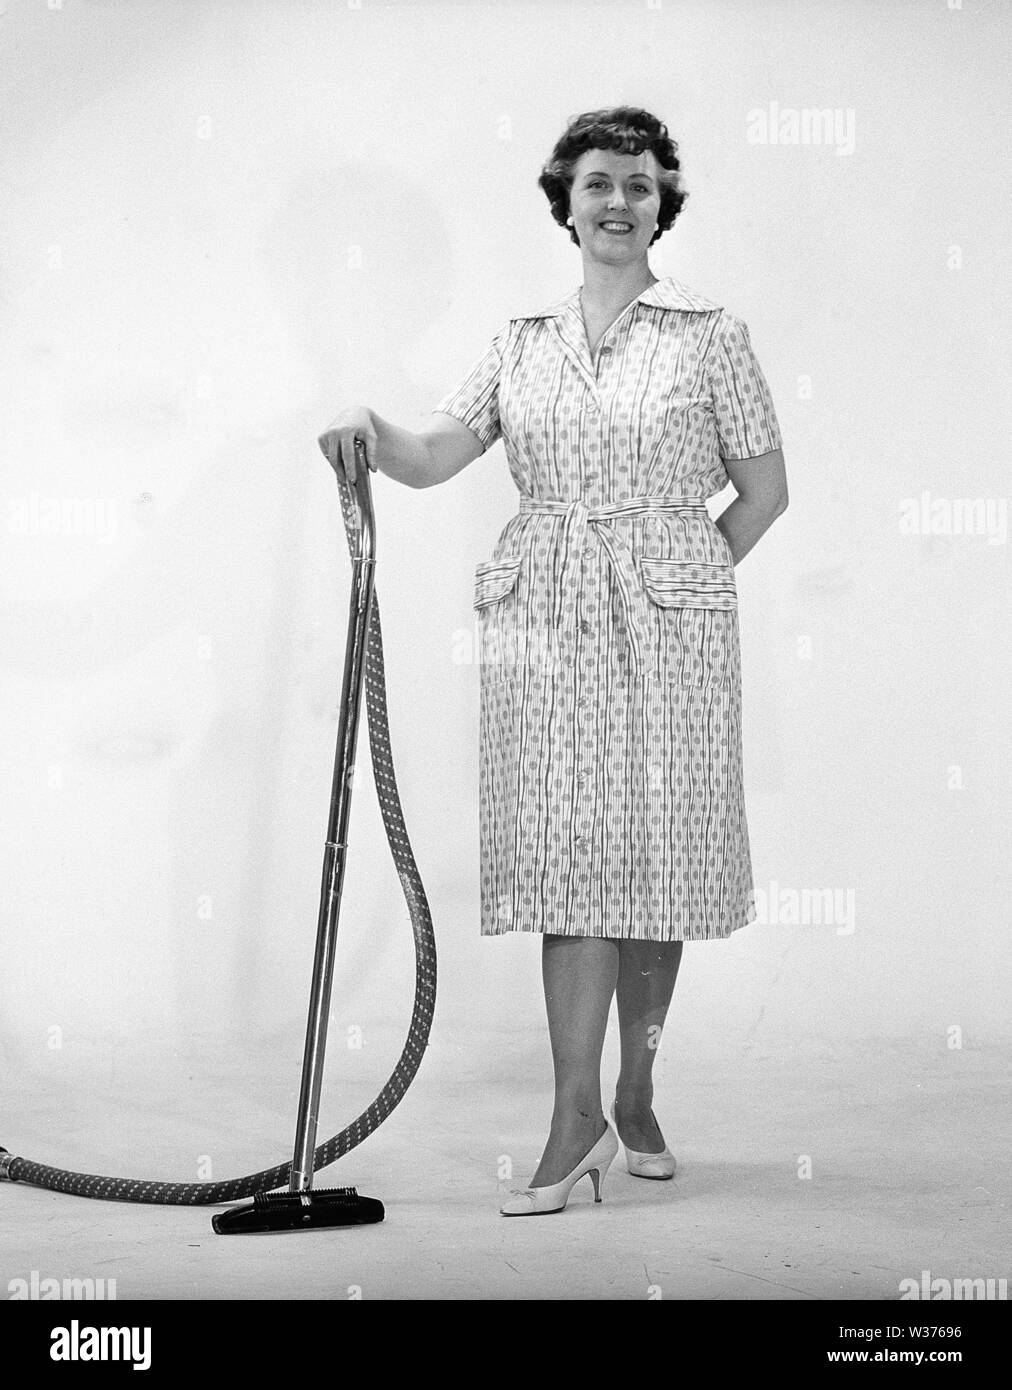 Journée de nettoyage dans les années 60. Une femme se tient debout tenant un aspirateur, à heureux. La Suède 1960 Kristoffersson ref CN109-10 Banque D'Images